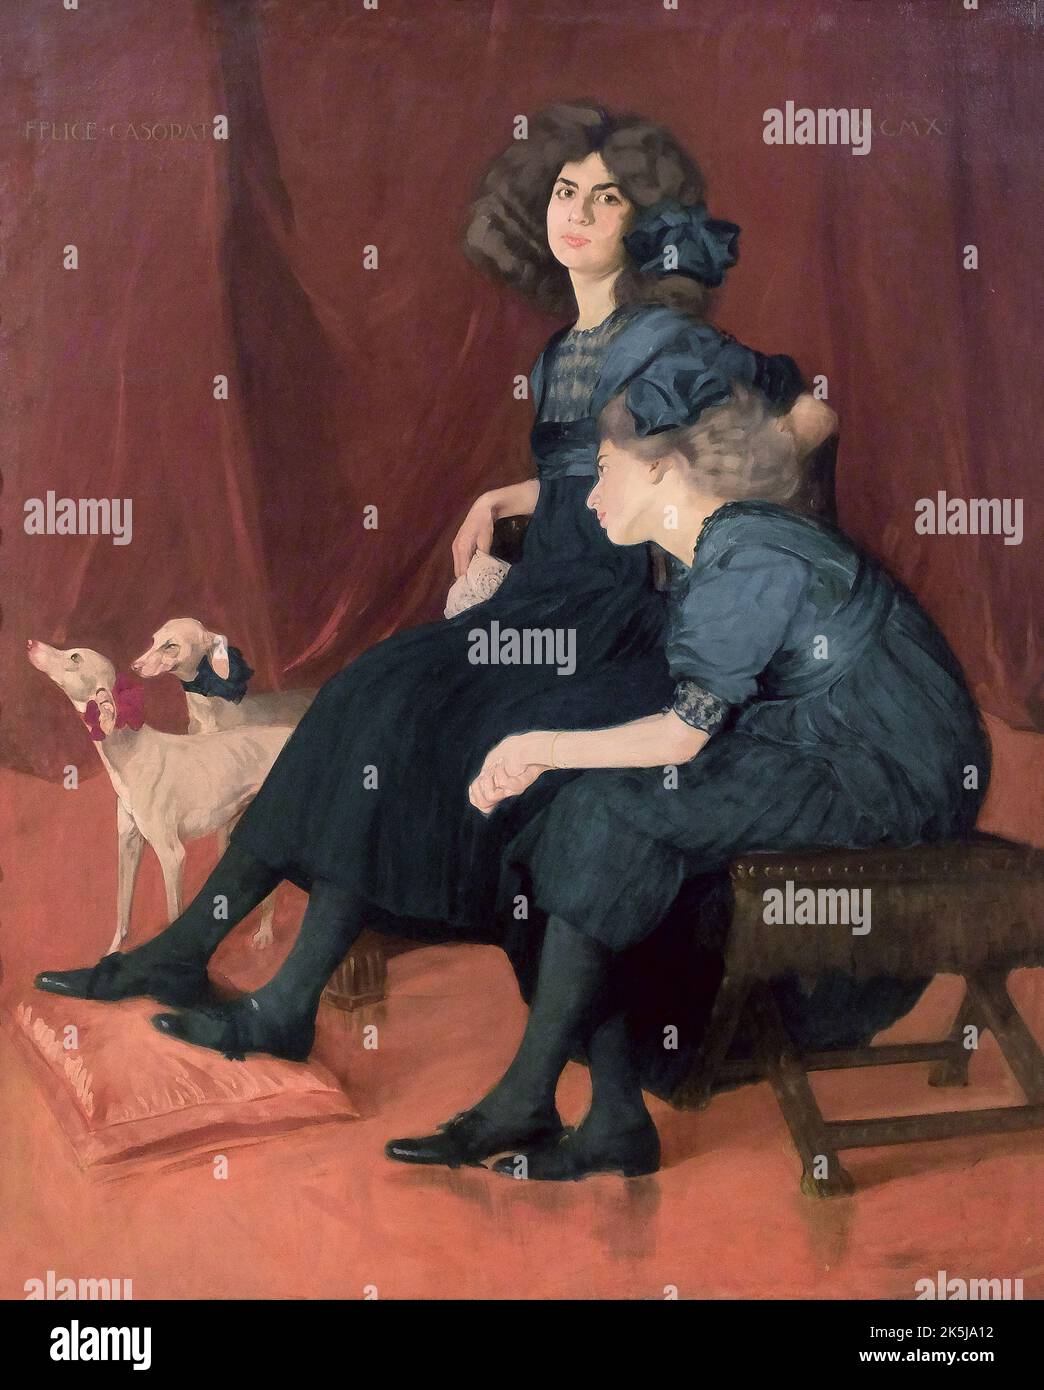 Le ereditiere - le sorelle (les heiresses - les sœurs) (1910) par Felice Casorati (1883-1963). Huile sur toile, 150x120 cm. Musée Mart, Rovereto, Ital Banque D'Images